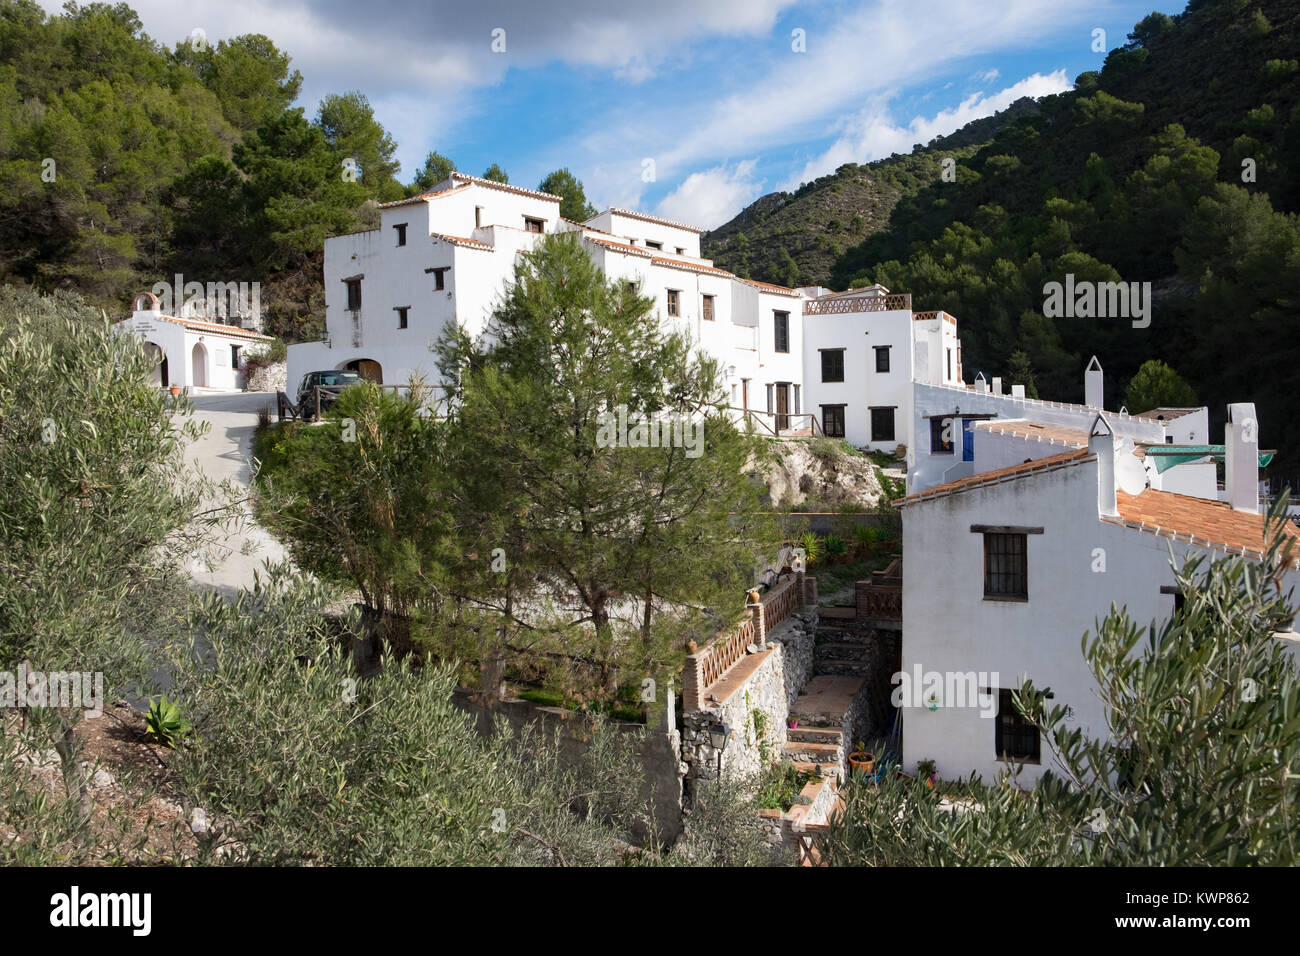 El Acebuchal, un villaggio bianco o peublo blanco, nella zona est di Malaga. Una volta abbandonato il borgo è stato recentemente restaurato. Foto Stock